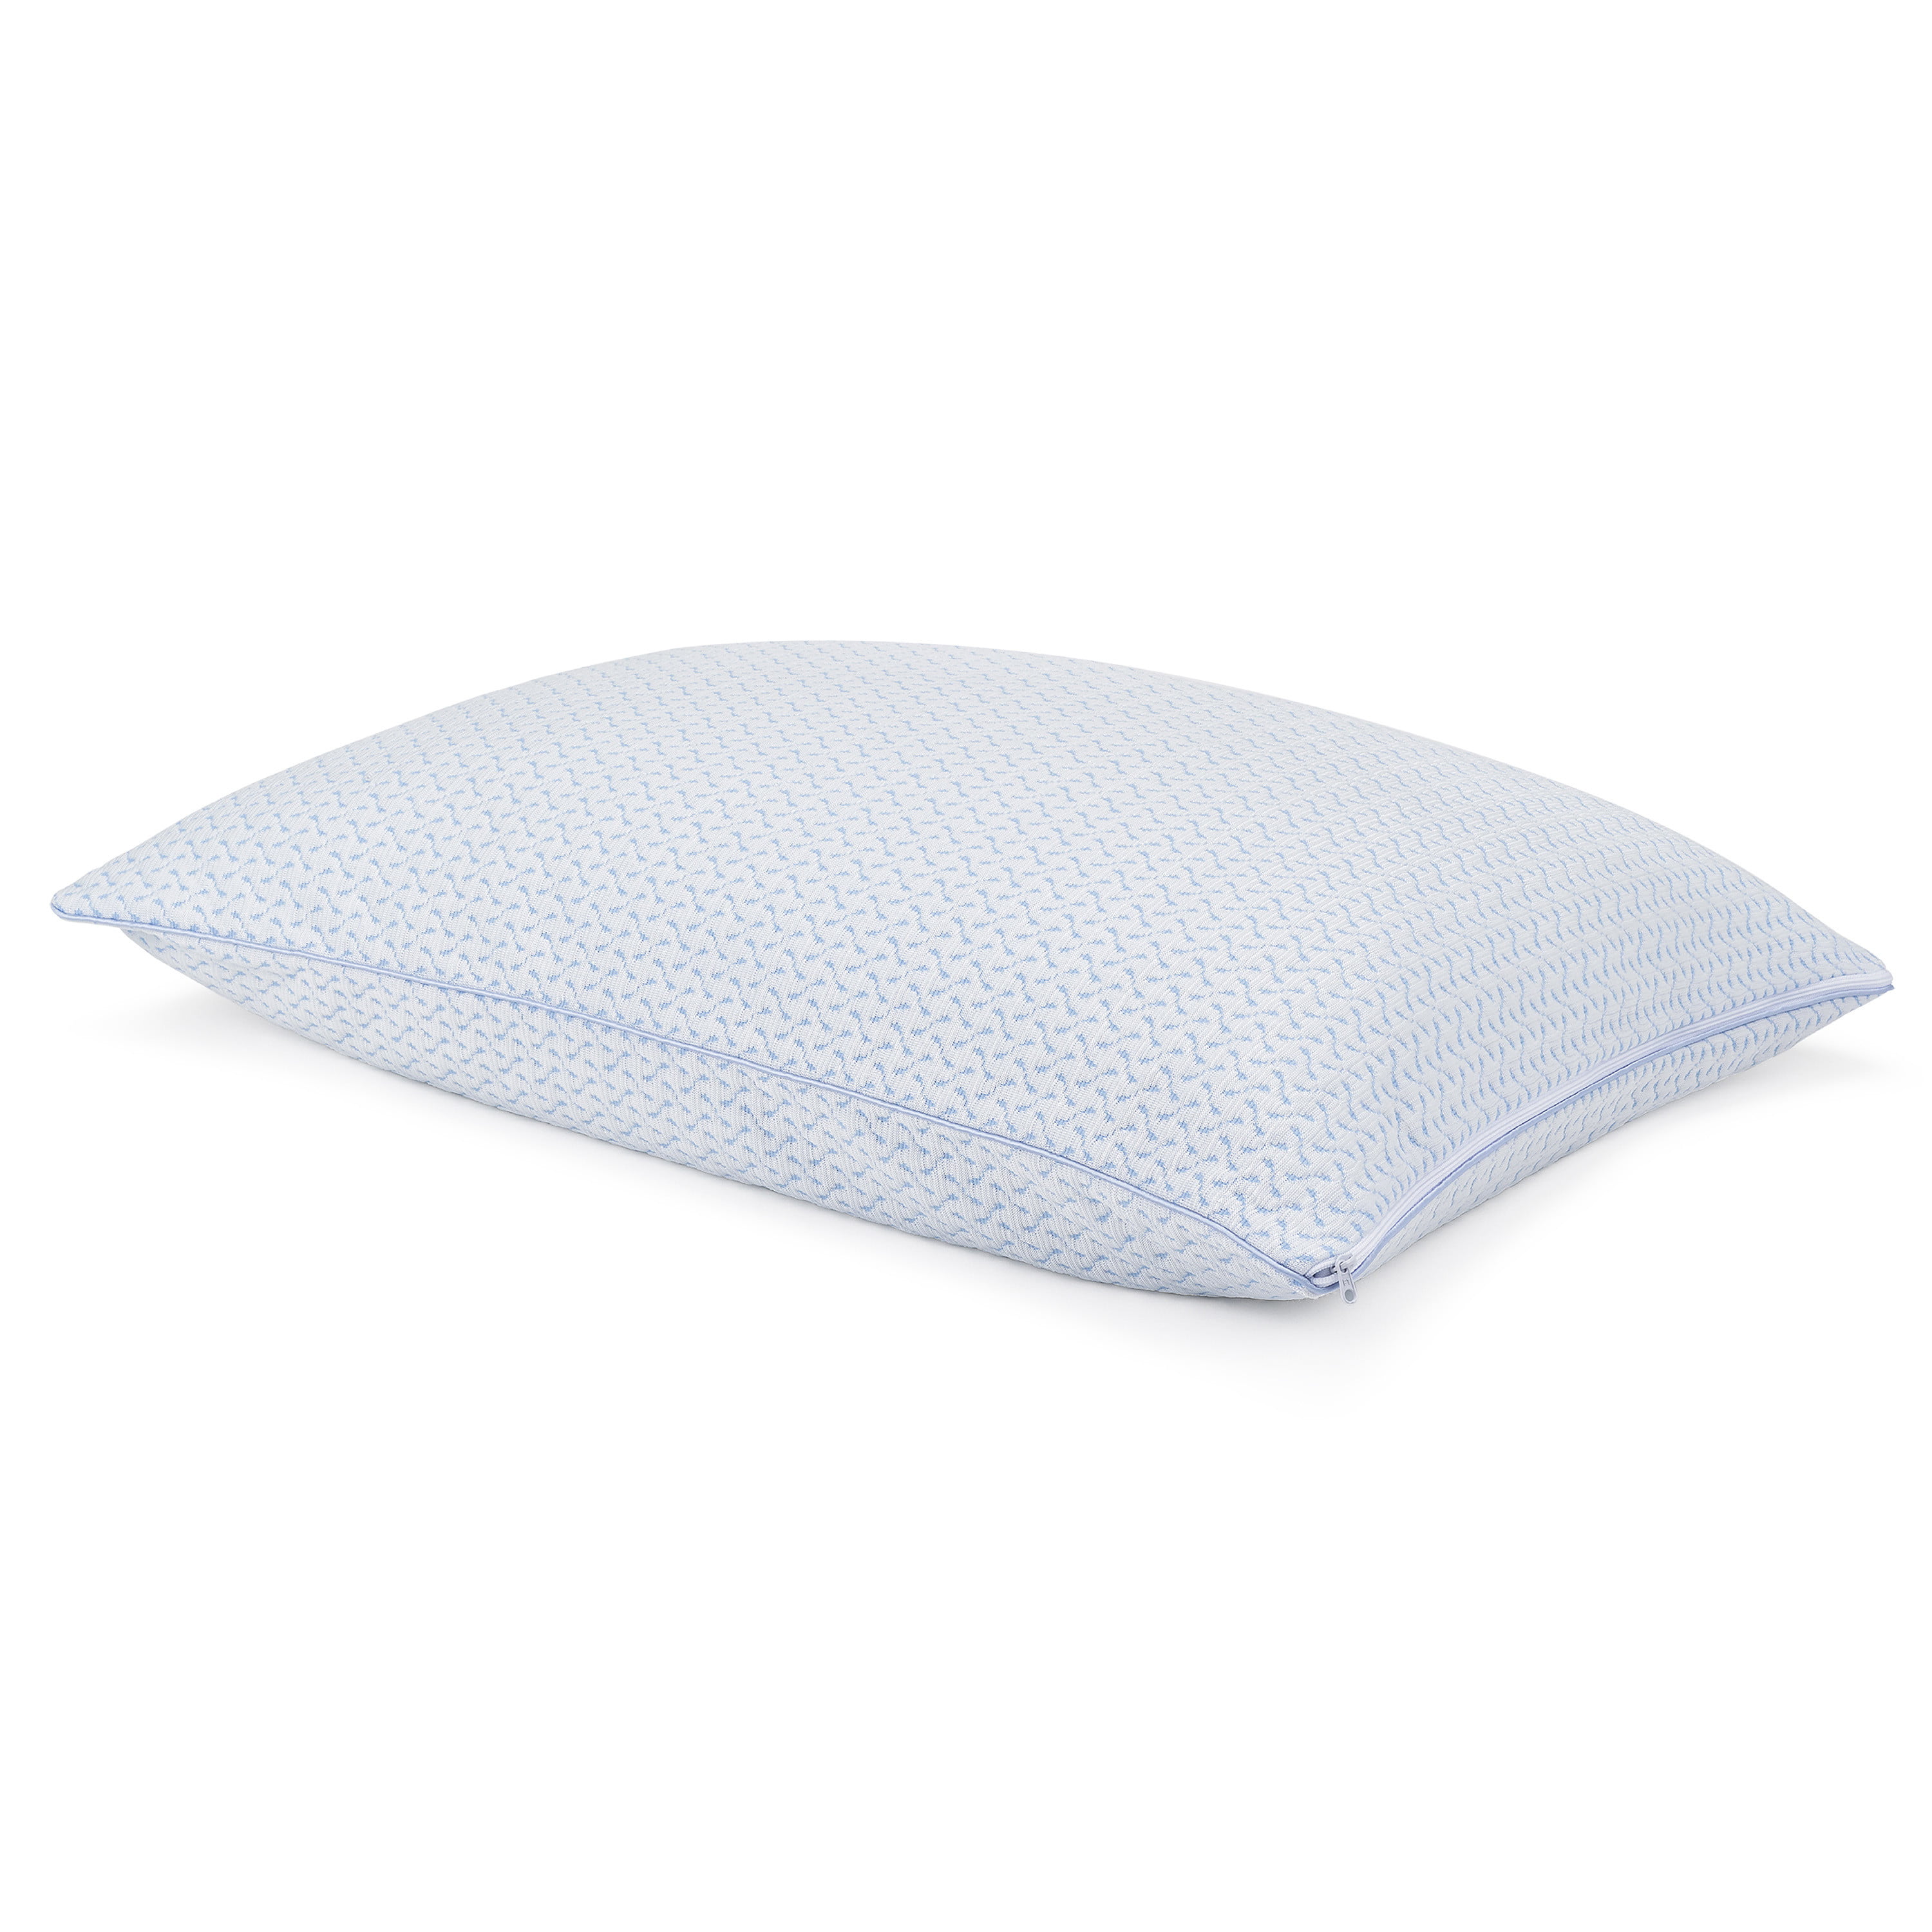 Beautyrest Sensacool Memory Foam Pillow Standard 